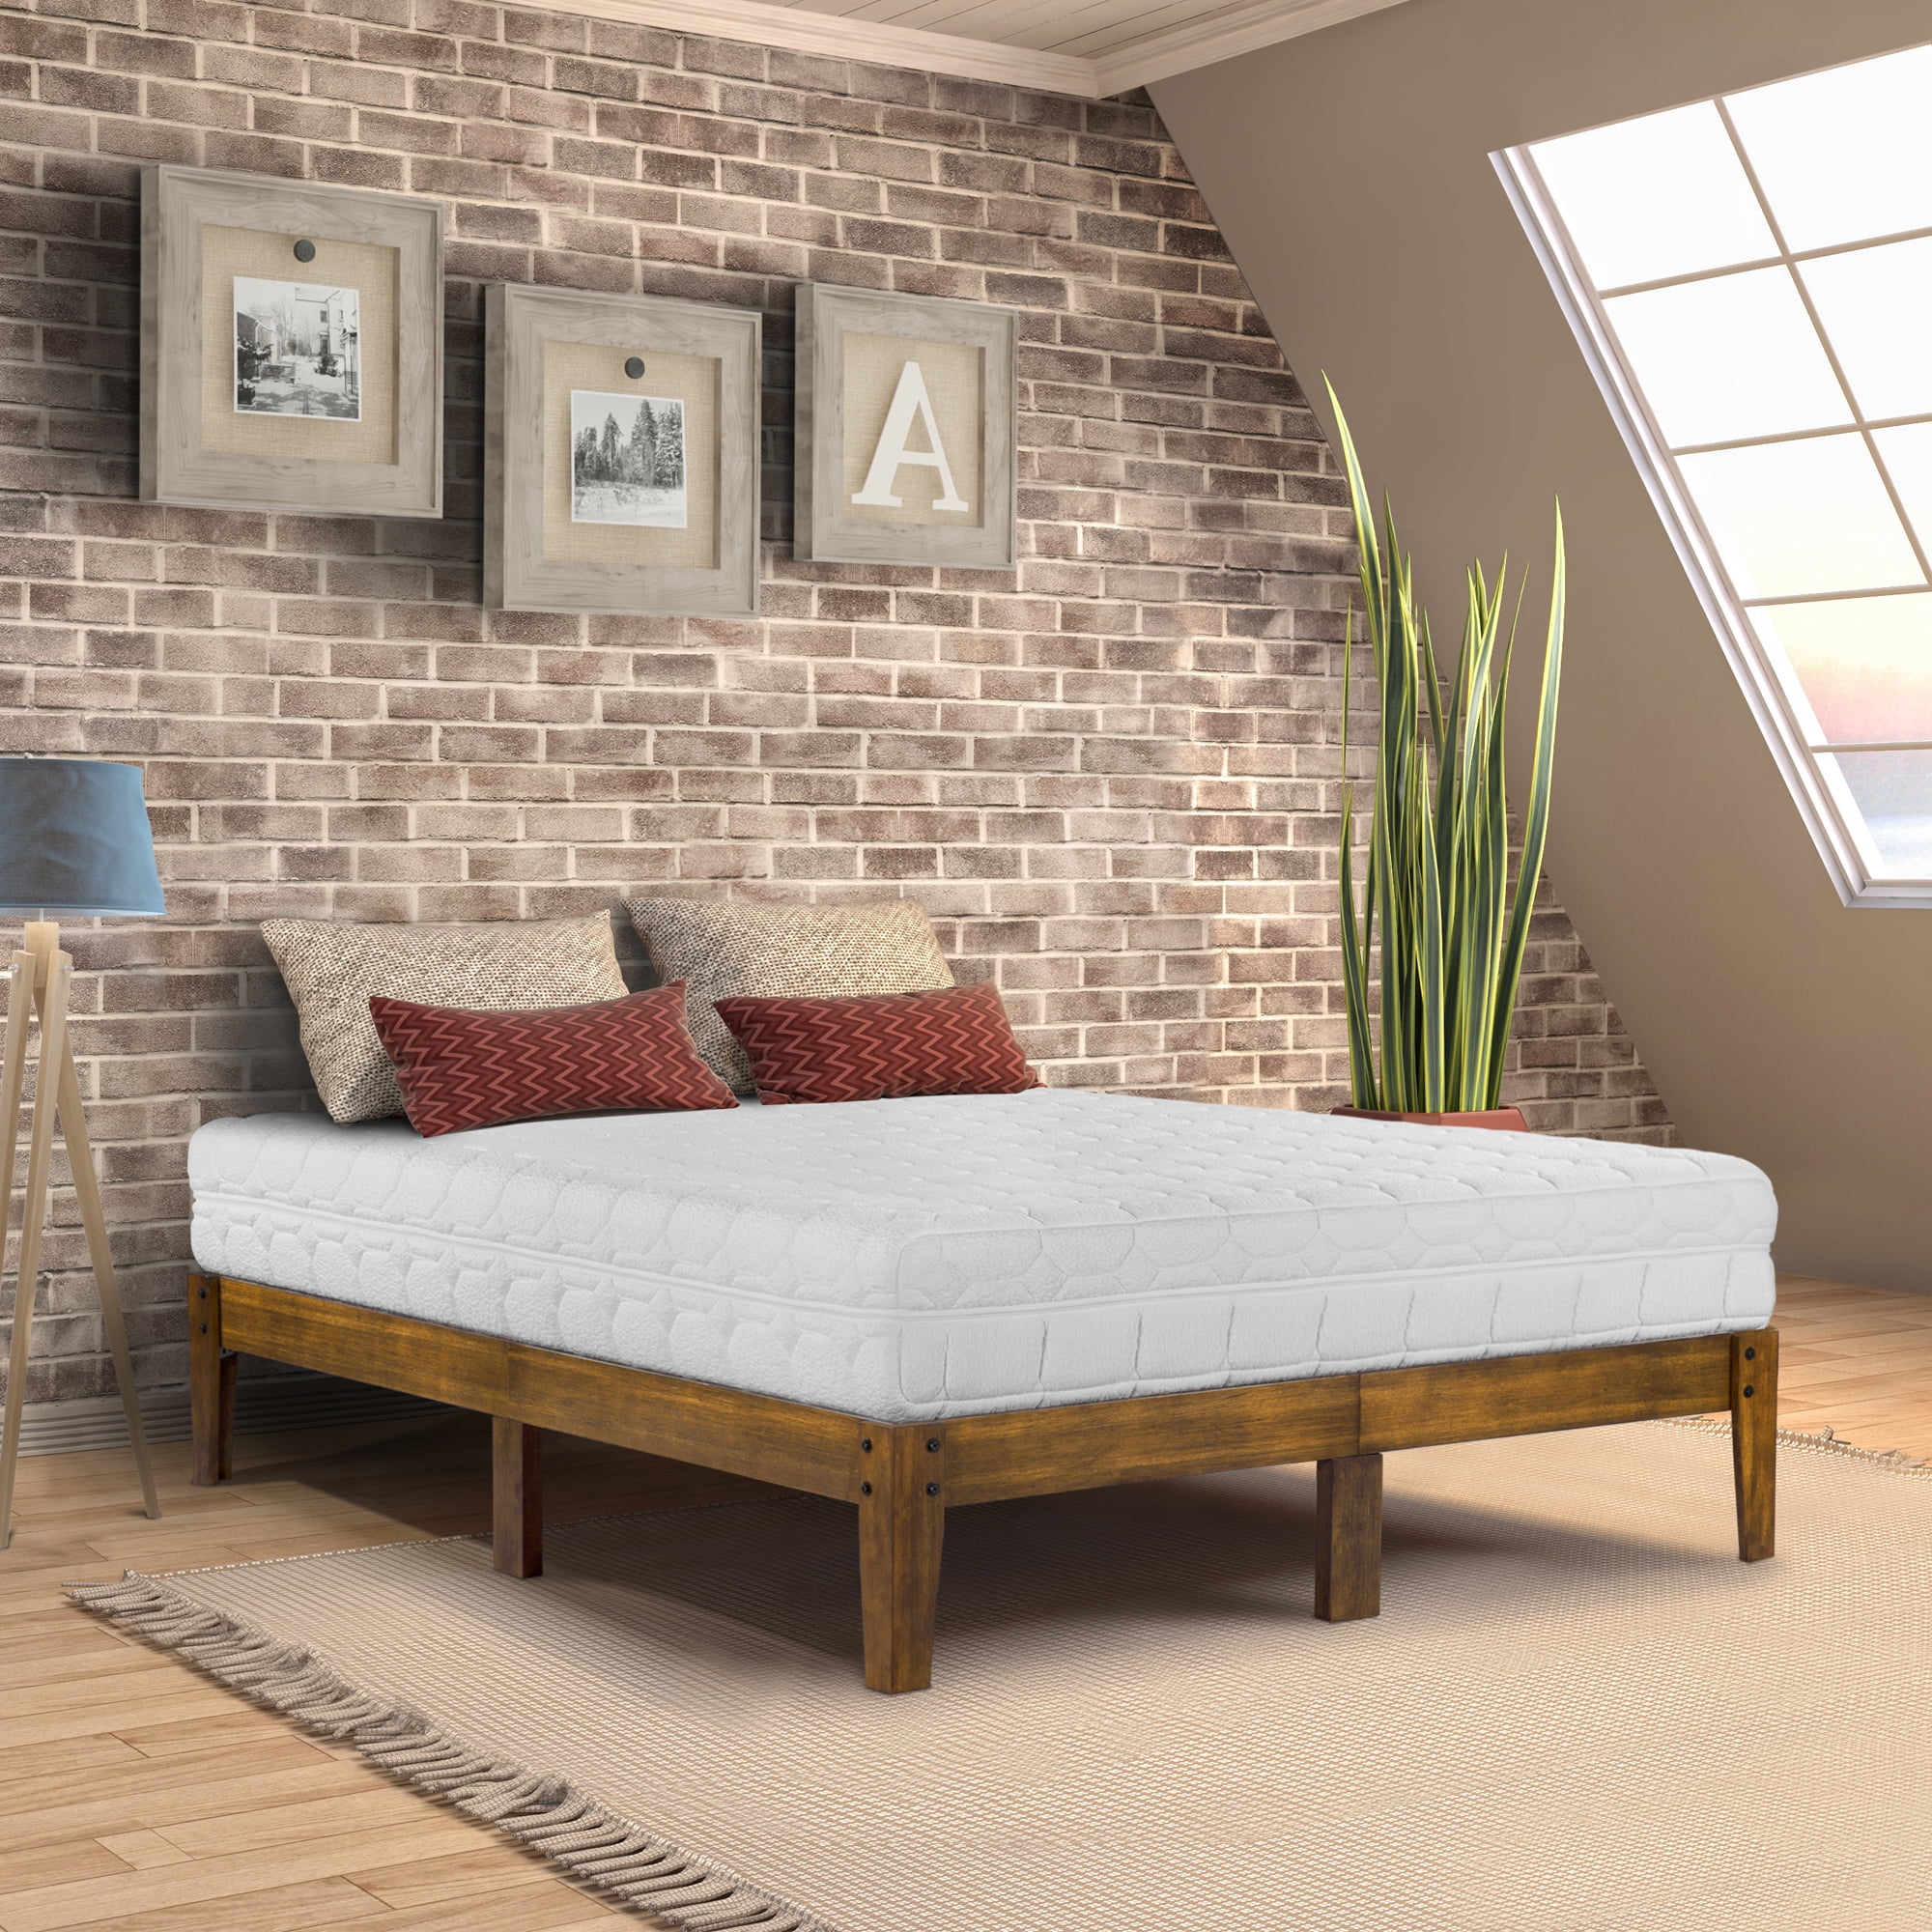 Smart Wood Platform Bed King, King Platform Bed High Off Ground